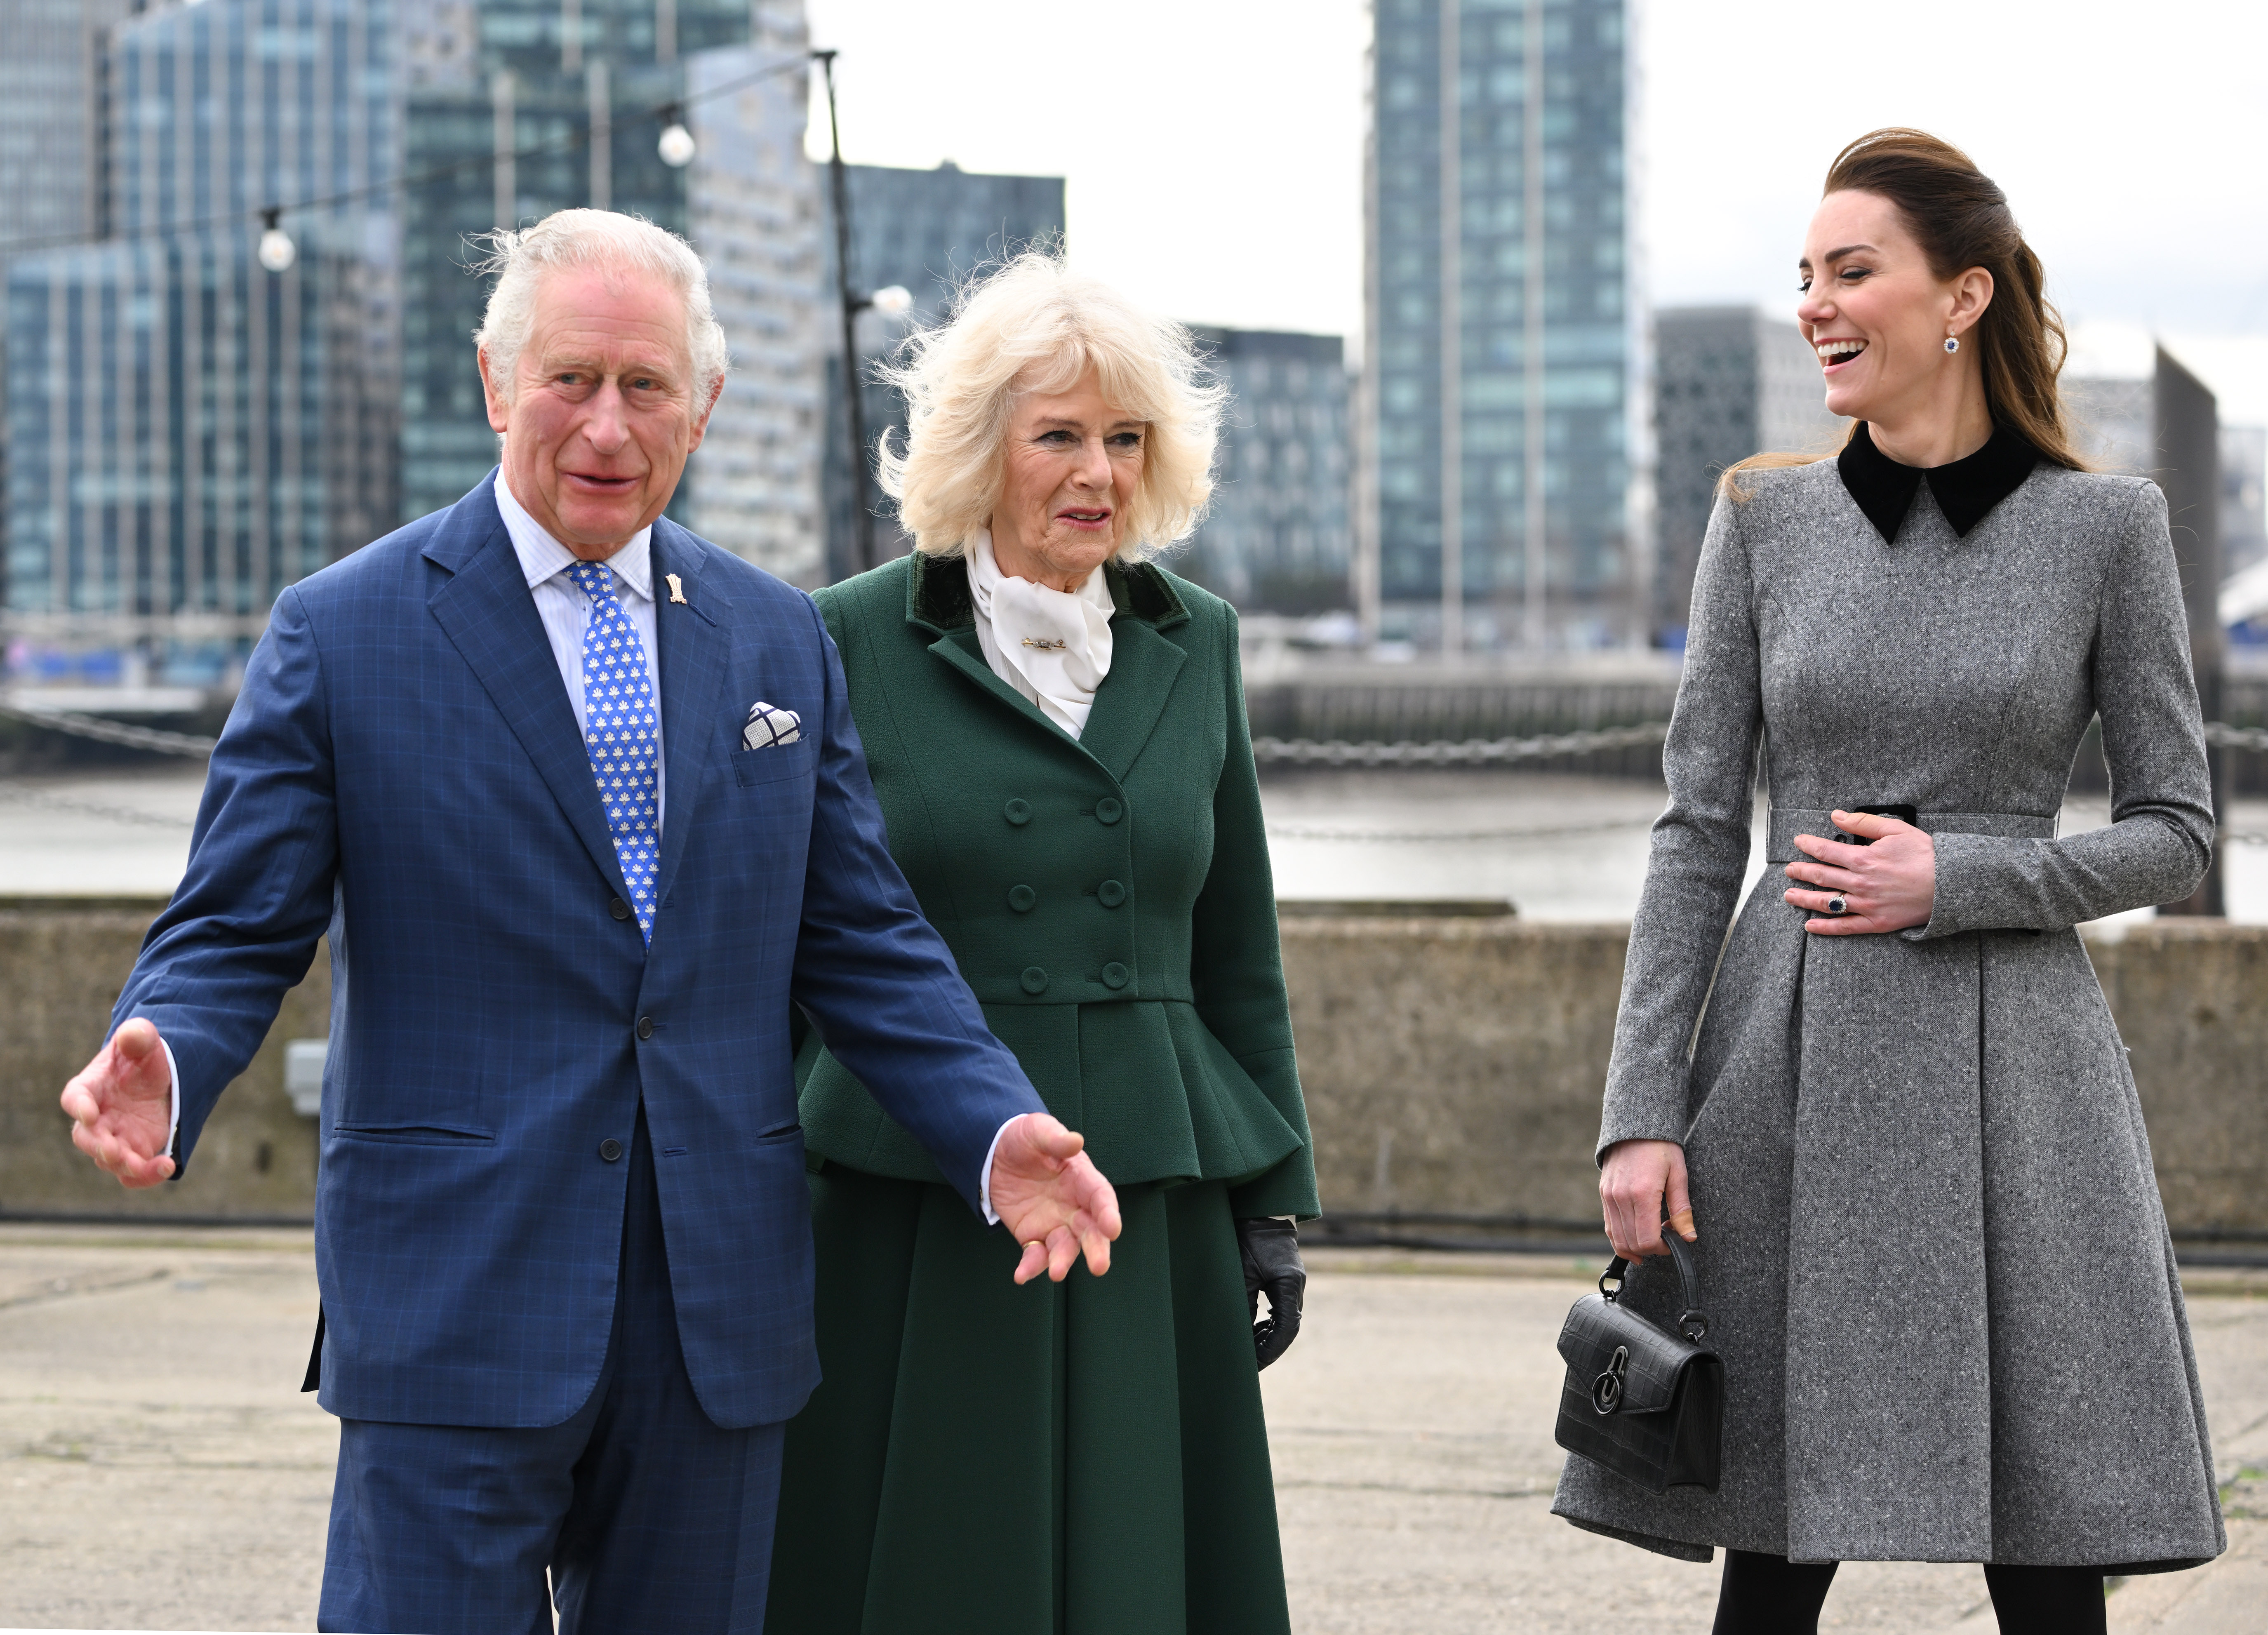 Le roi Charles III, la reine Camilla et la princesse Catherine lors de leur visite du site de formation de la Fondation du Prince pour les arts et la culture à Trinity Buoy Wharf le 03 février 2022 à Londres, Angleterre | Source : Getty Images